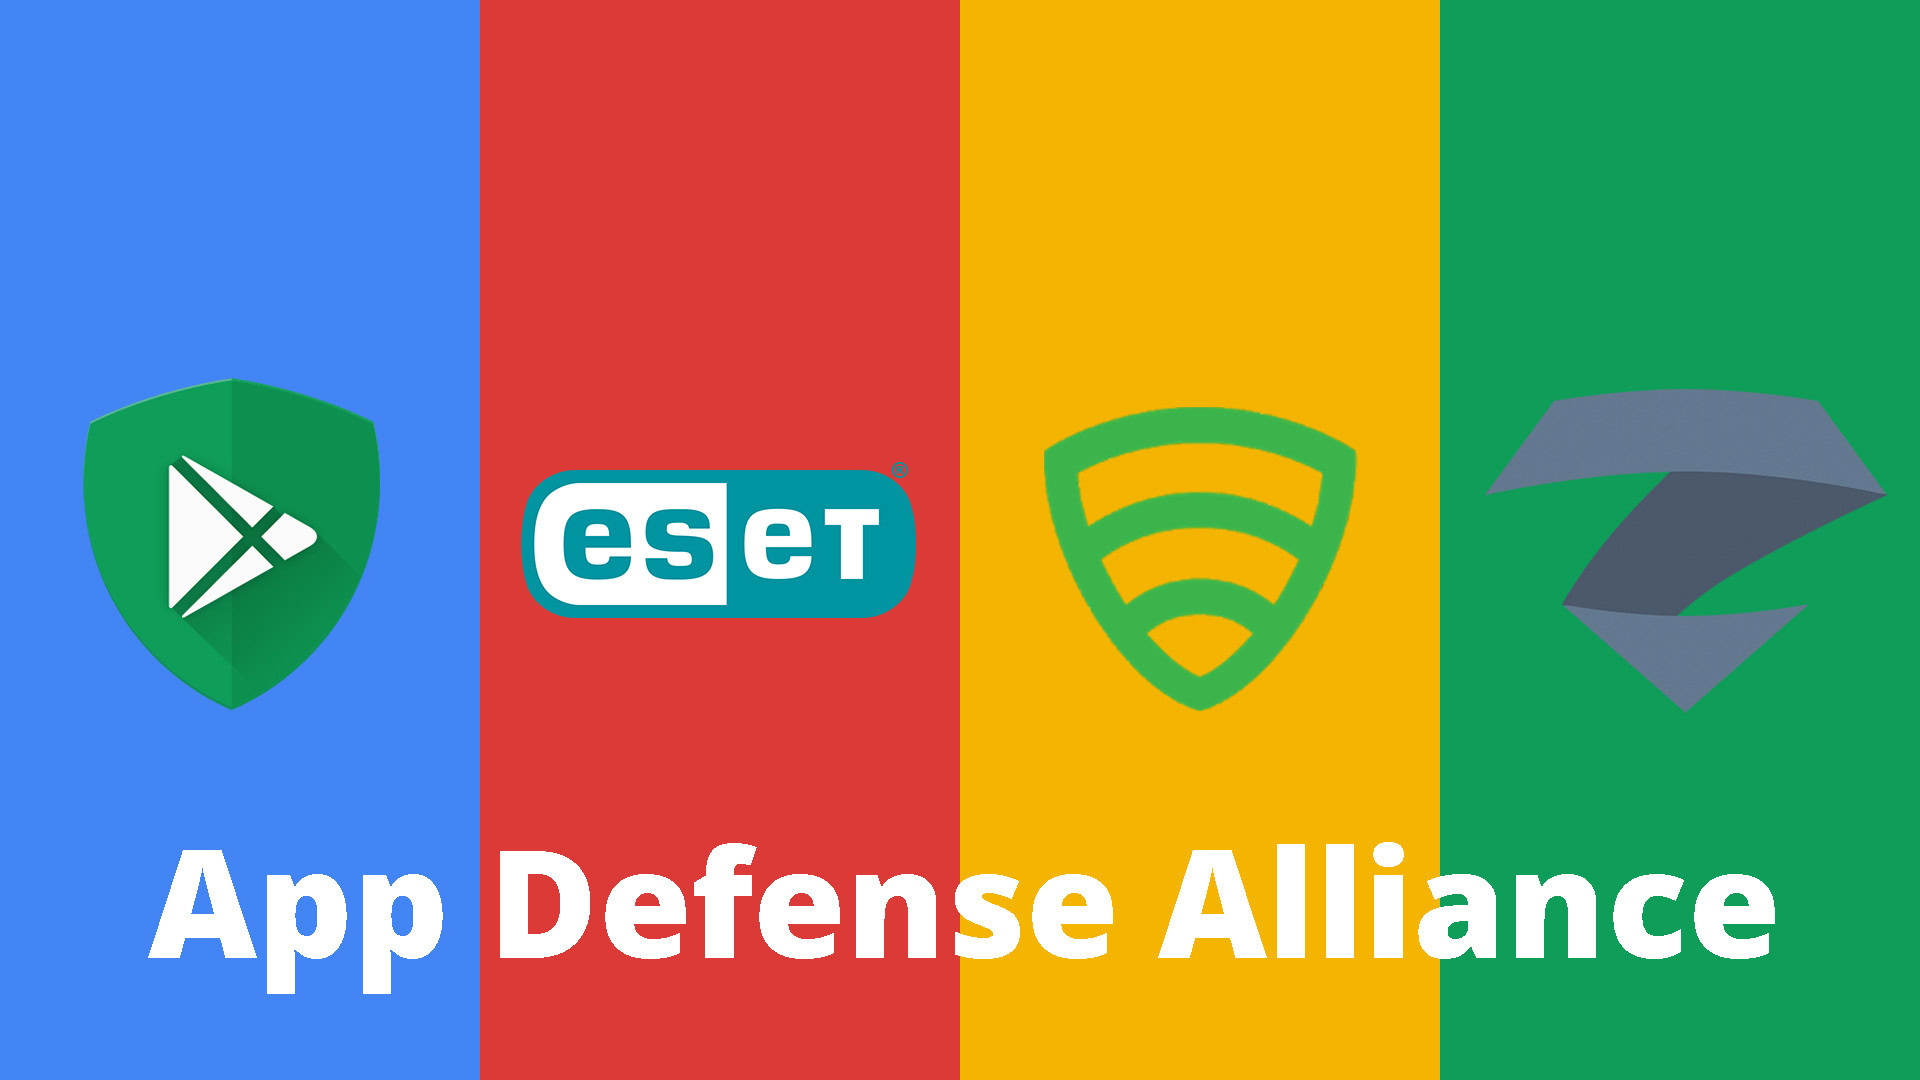 Google's new App Defense Alliance is a good start – but needs work